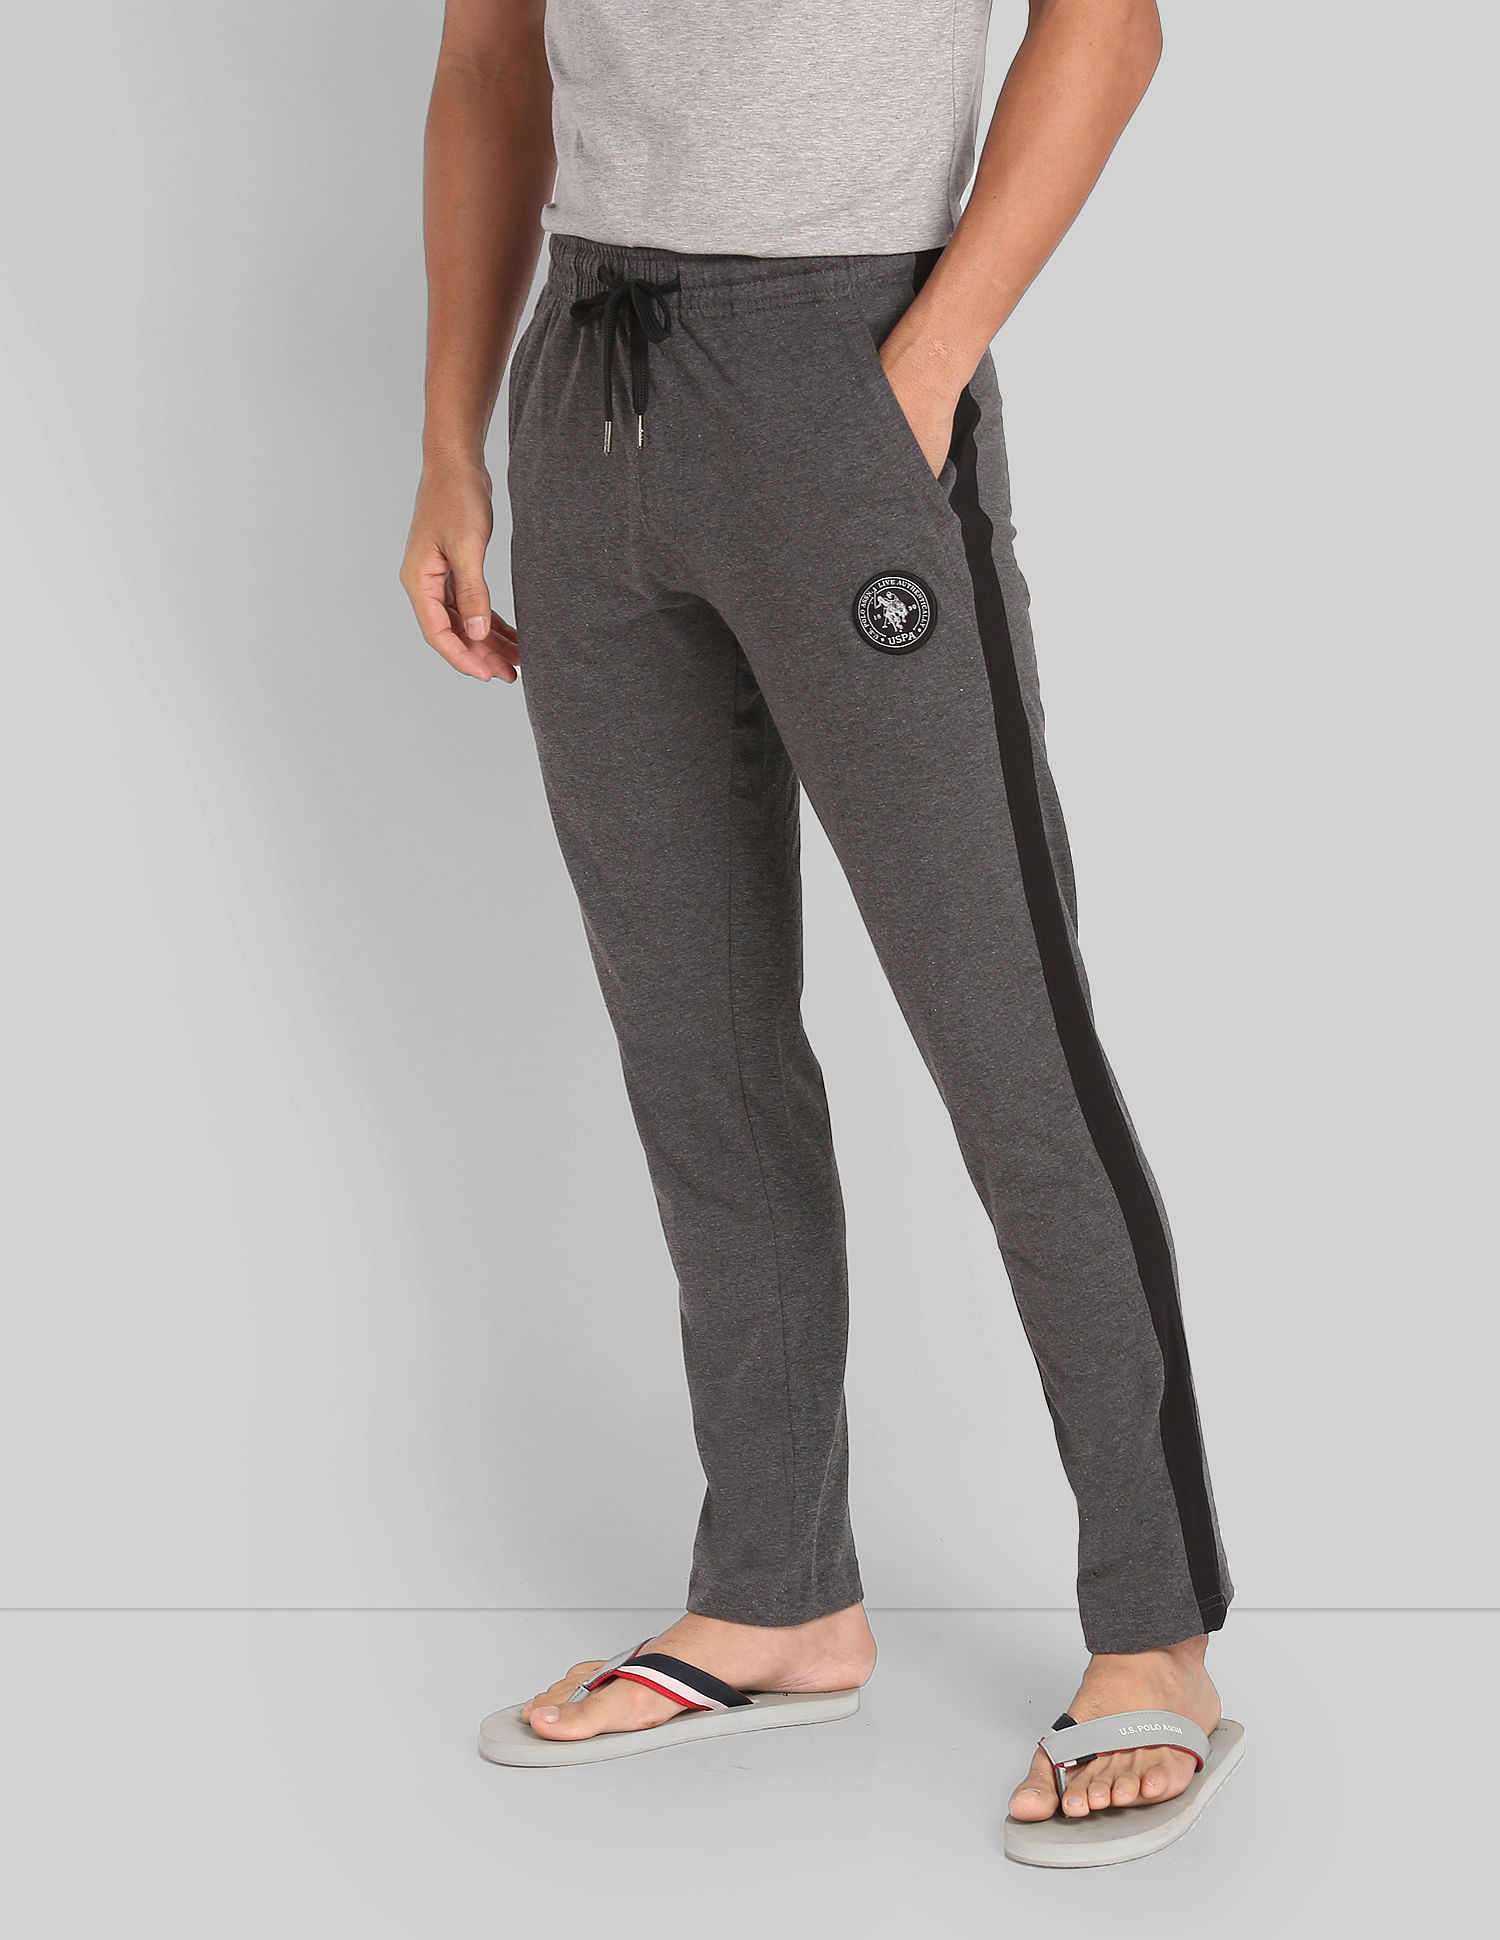 Mens Joggers Pants Mens Full Side Zipper Pants Cotton Track Pants Men Thin Cotton  Track Pants Men - Walmart.com